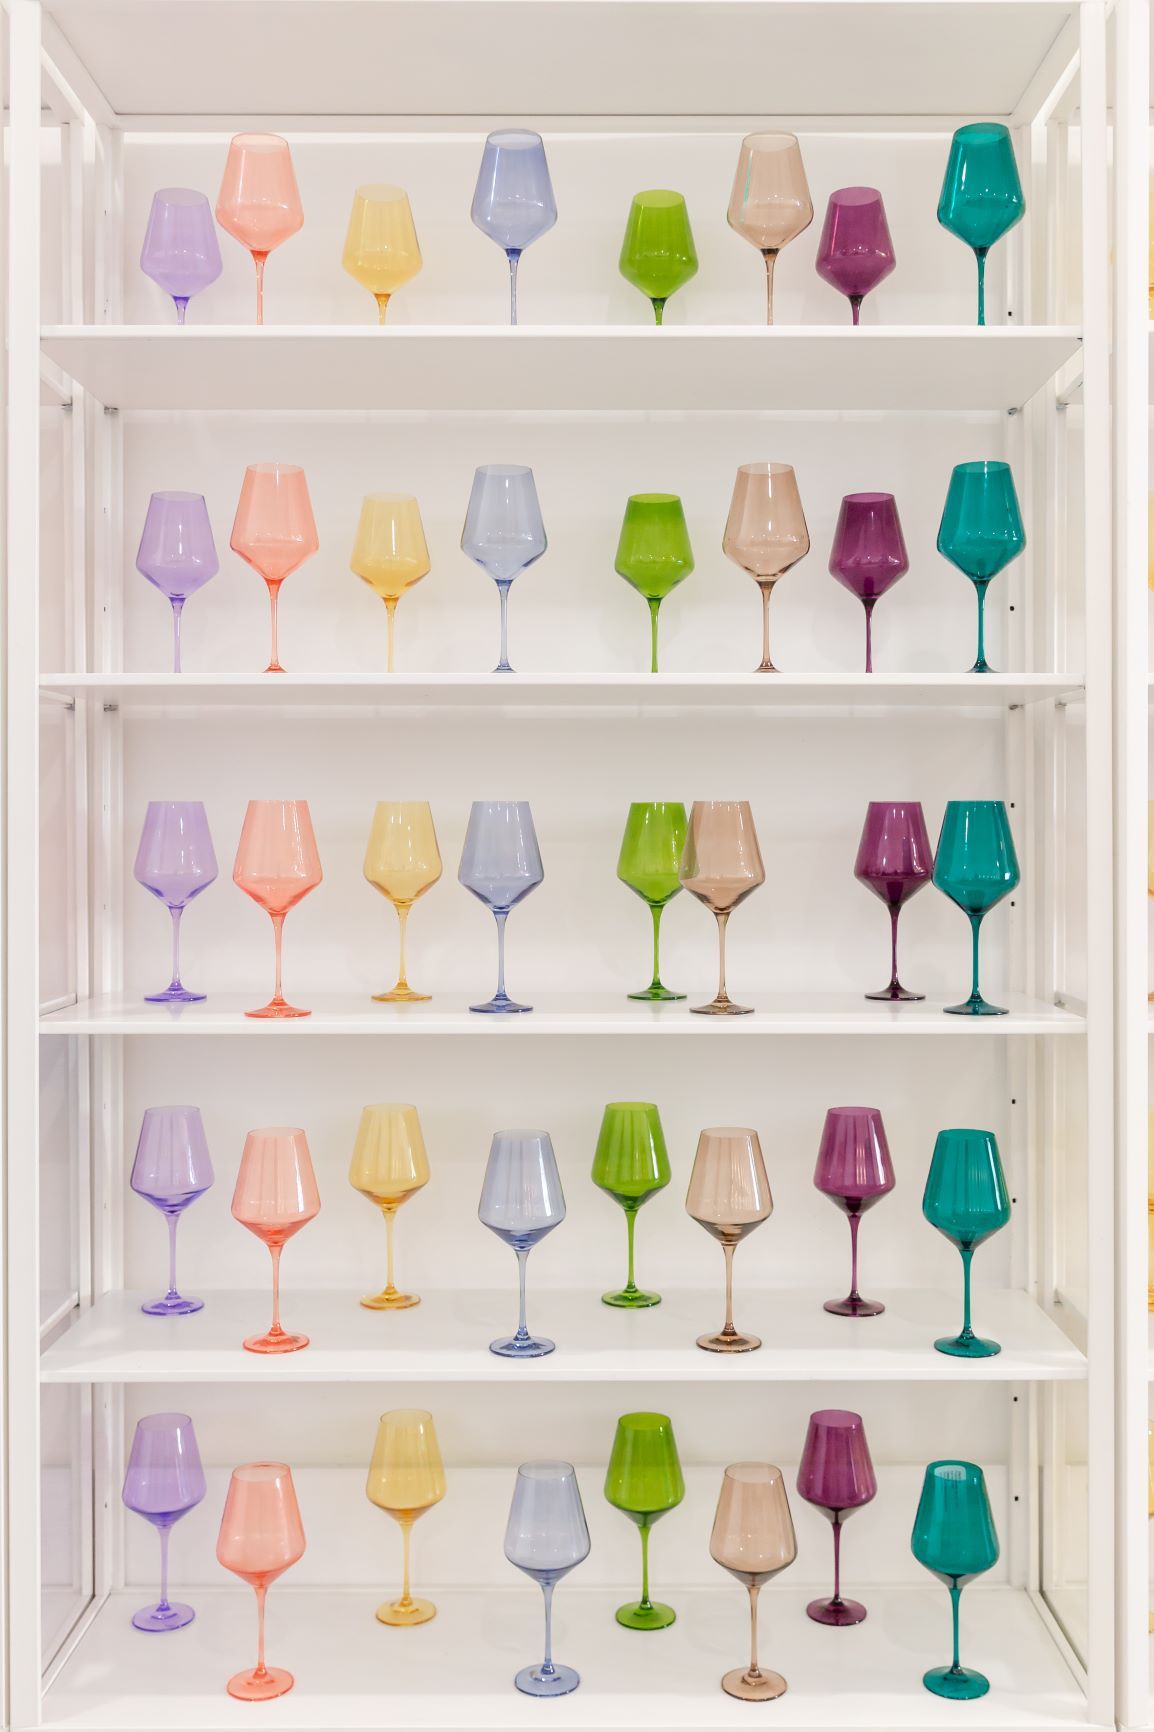 estelle colored glass via wallflower blog